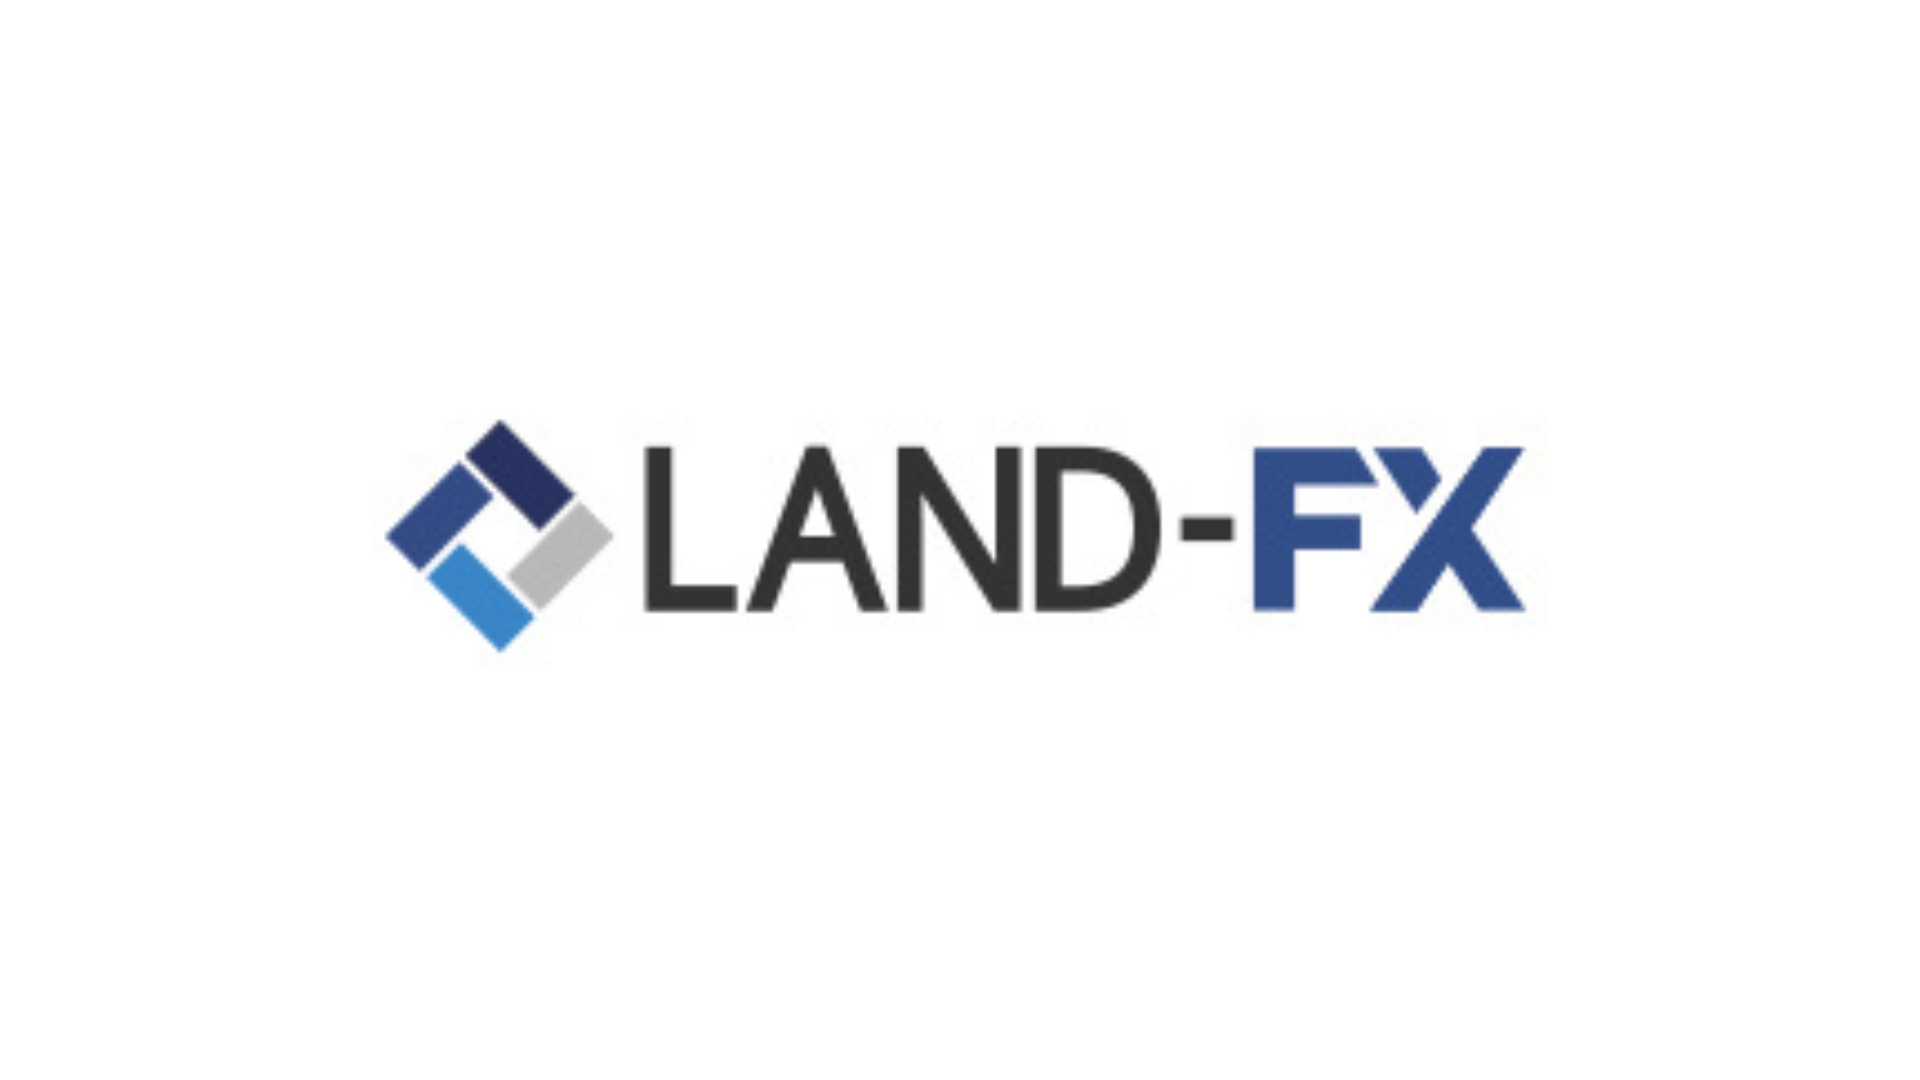 LANDFX ランドFX ロゴ